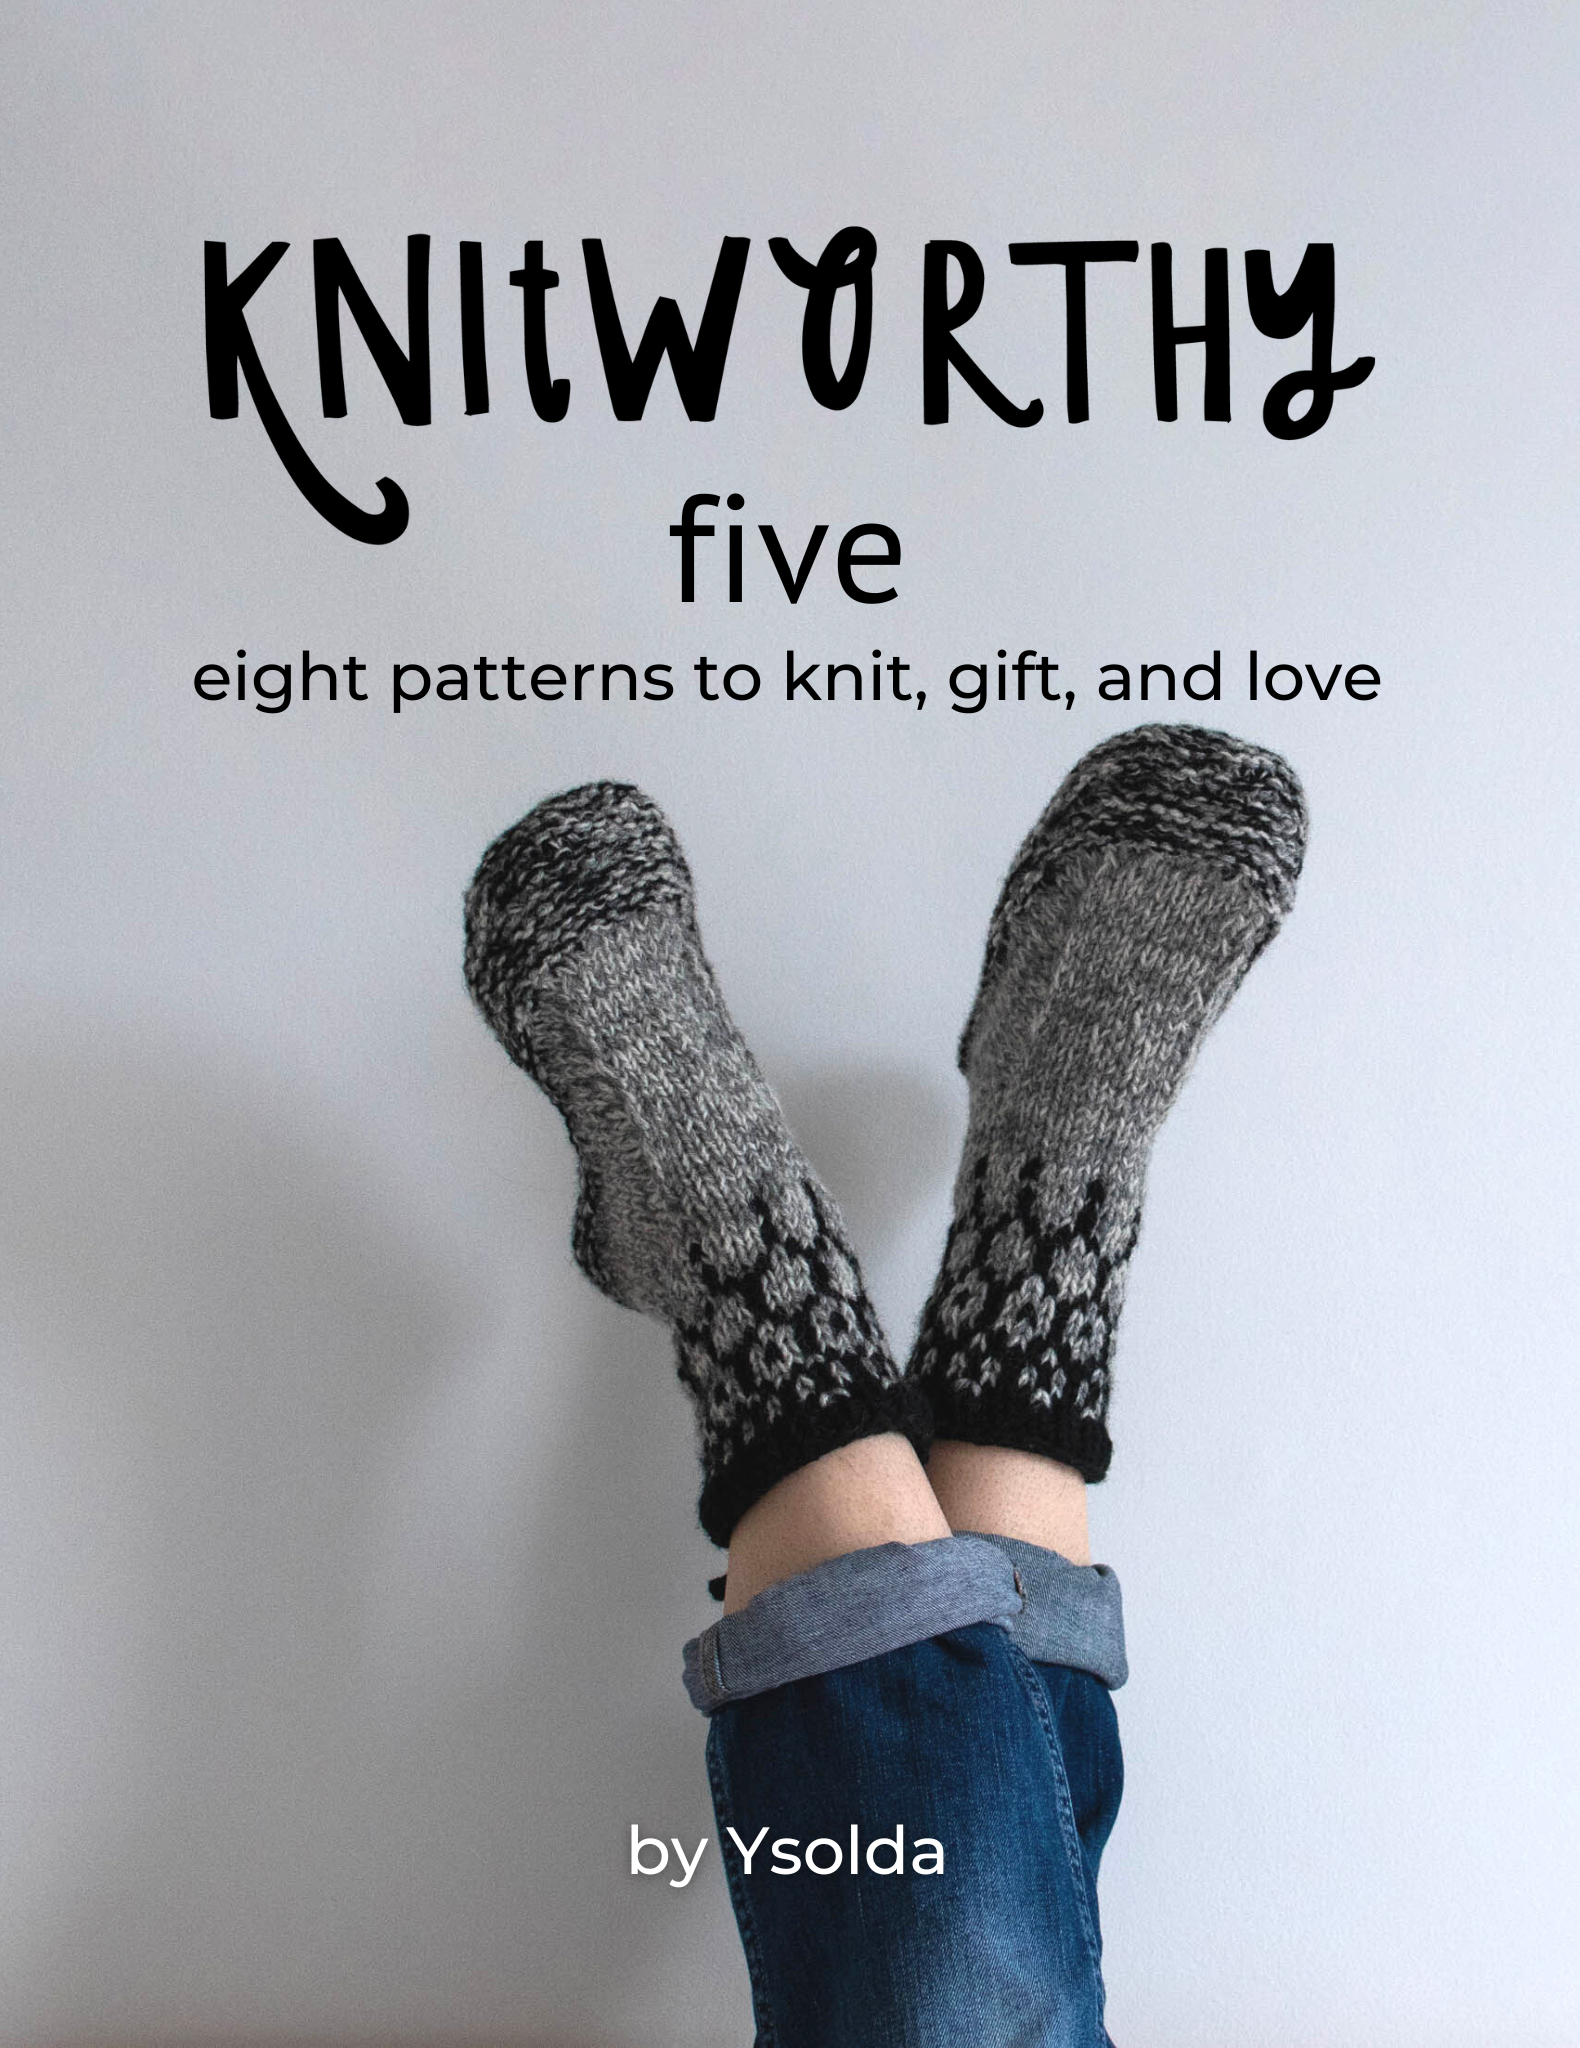 Knitworthy Ebooks